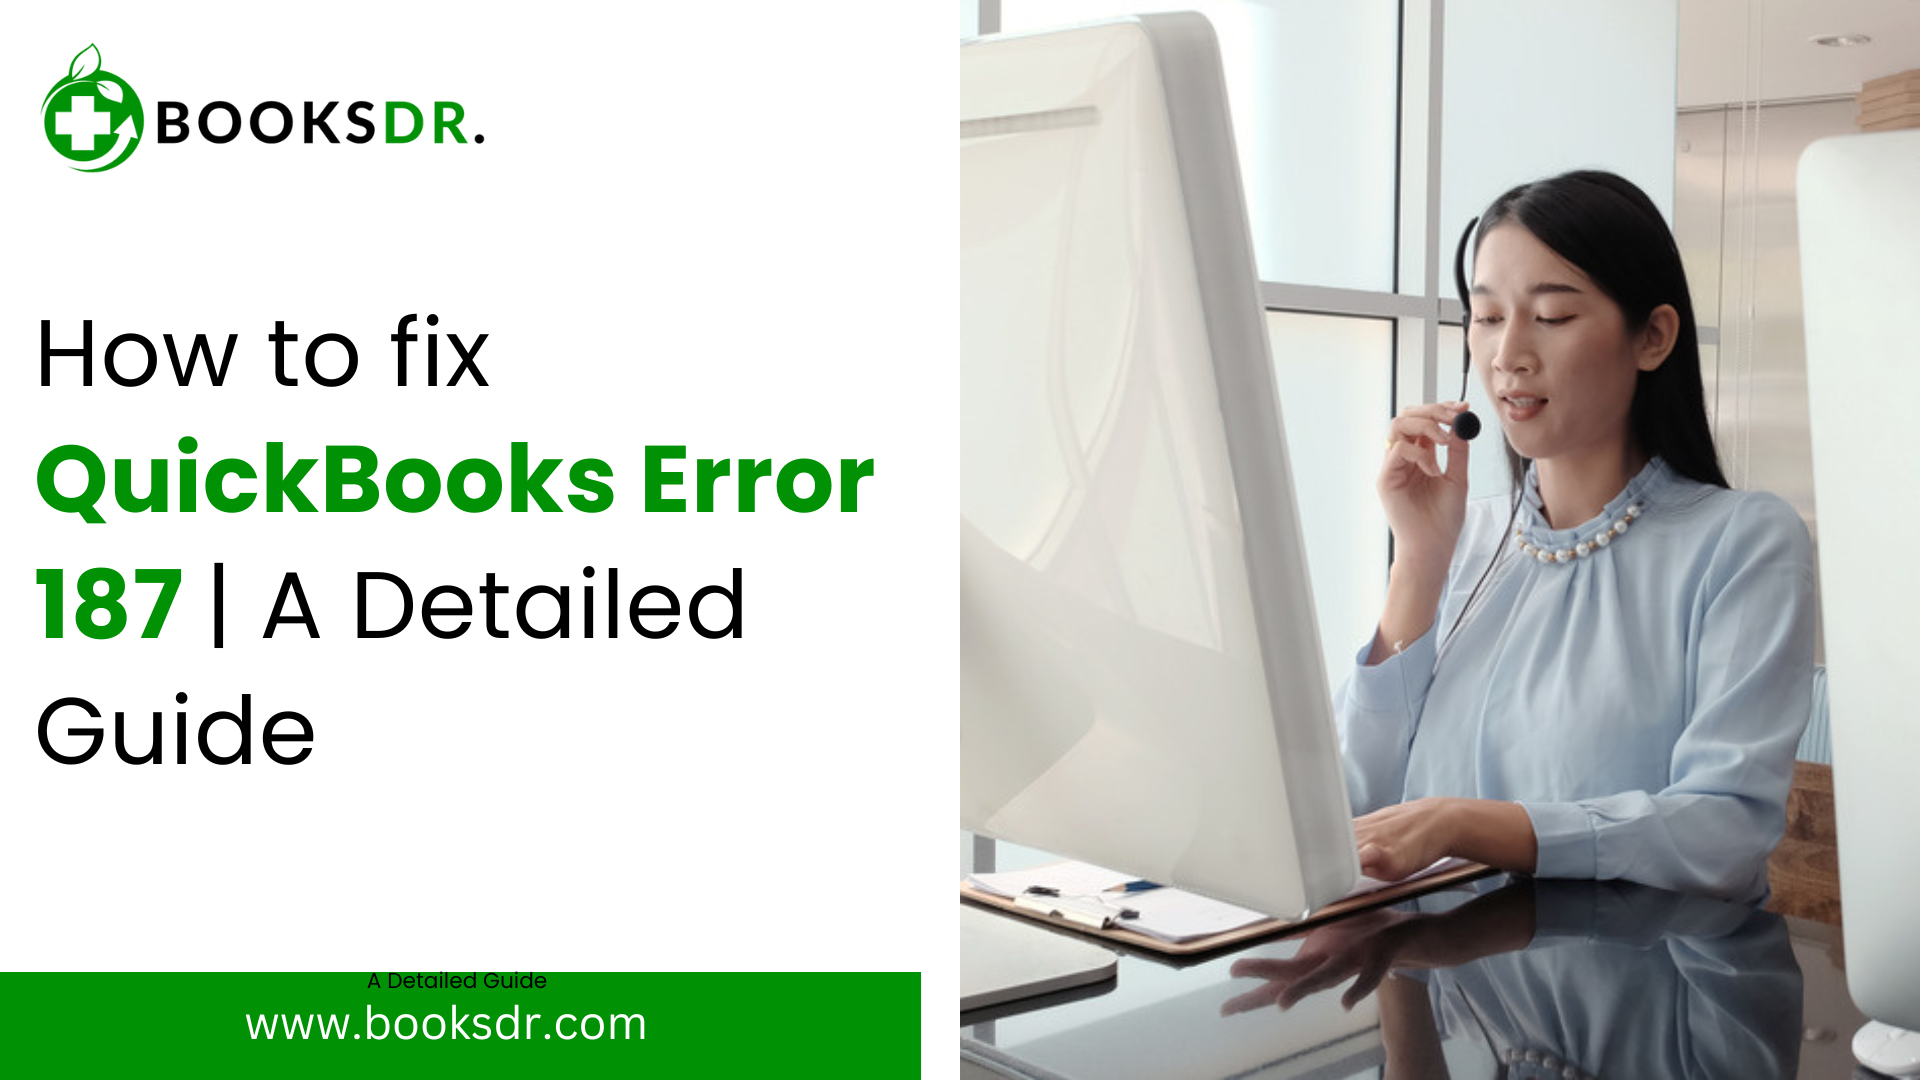 QuickBooks Error 187